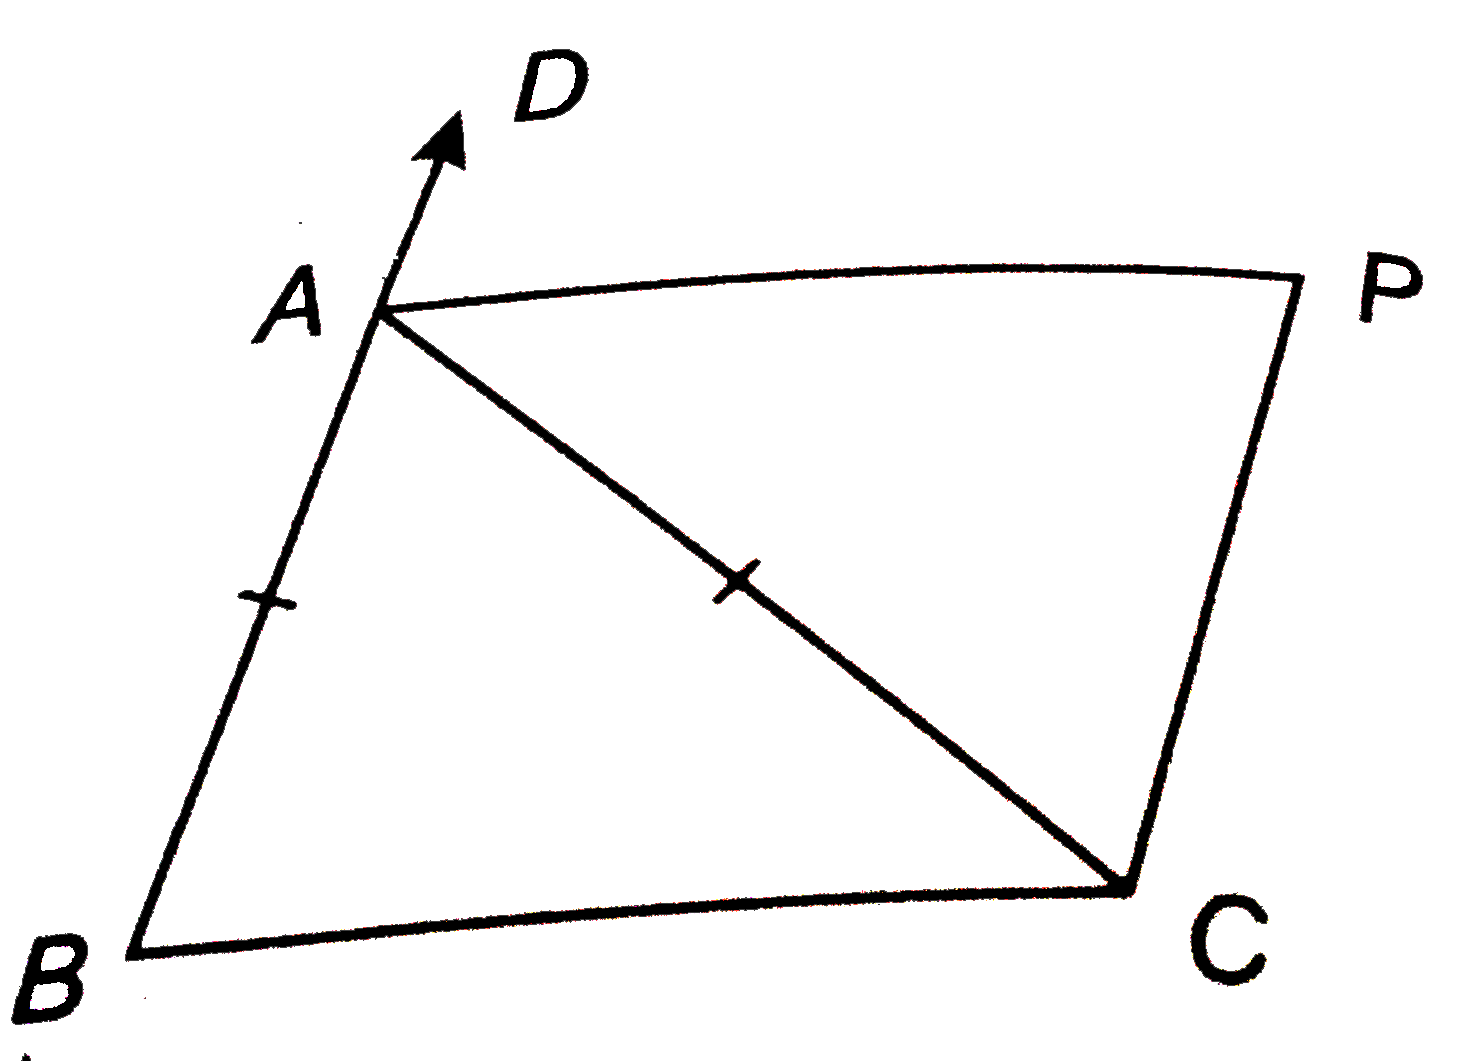 संलग्न चित्र में DeltaABC की भुजाओं AB,BC और CA के समांतर रेखाओं क्रमशः PQ,RP और QR से  DeltaPQR बनाया गया है । सिद्ध कीजिए कि-   PQ+QR+RP=2(AB+BC+CA)